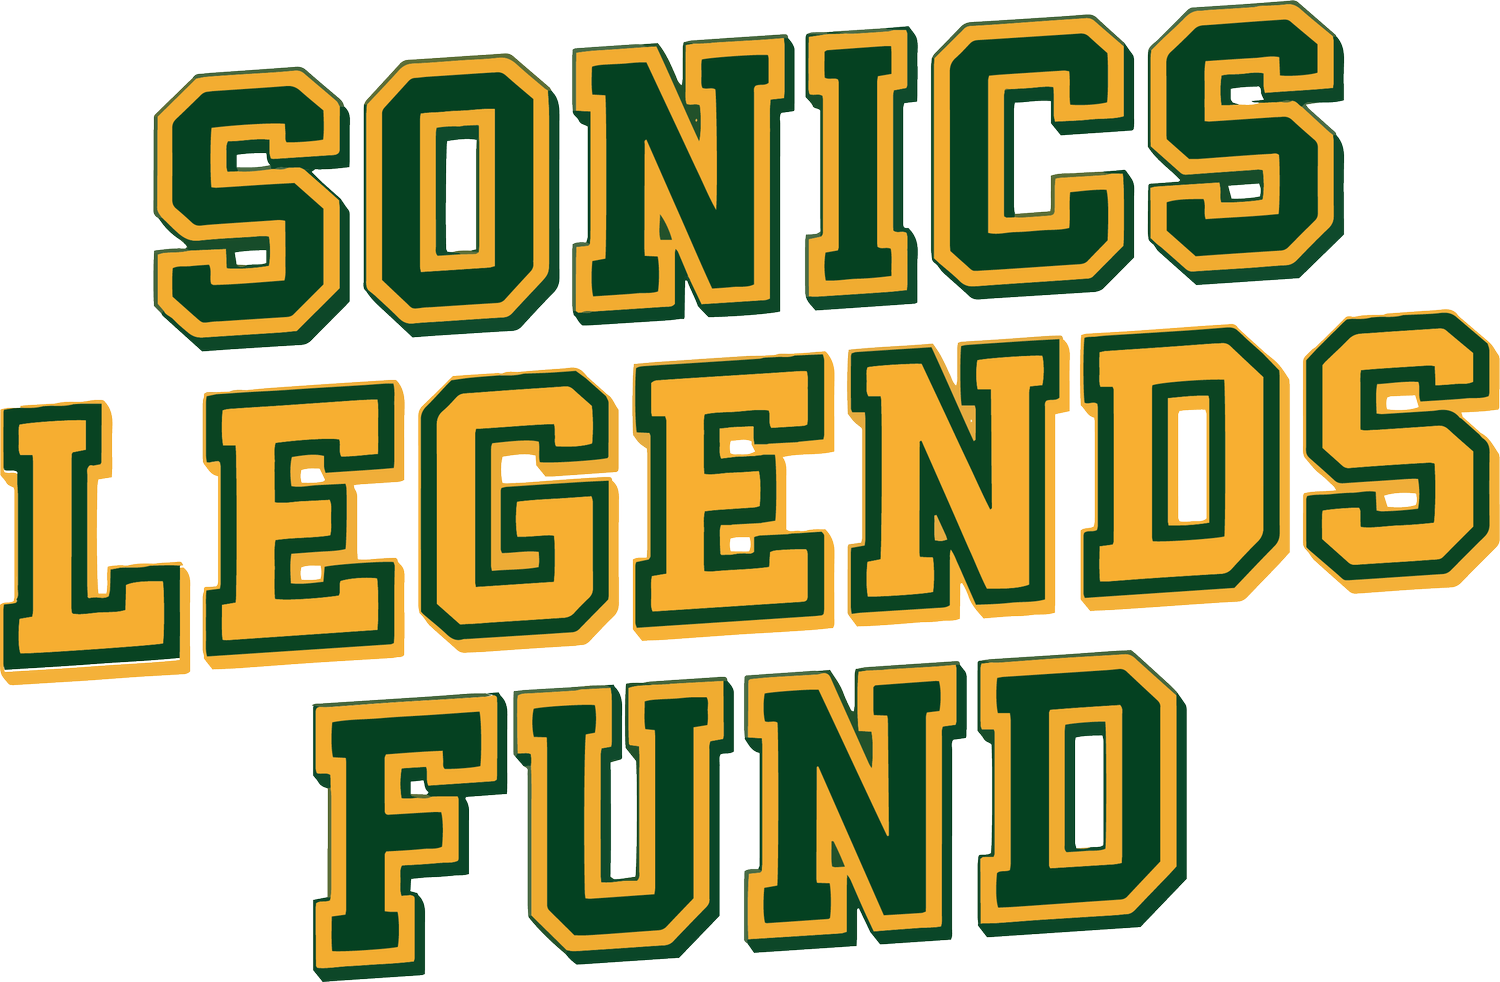 Sonics Legends Fund